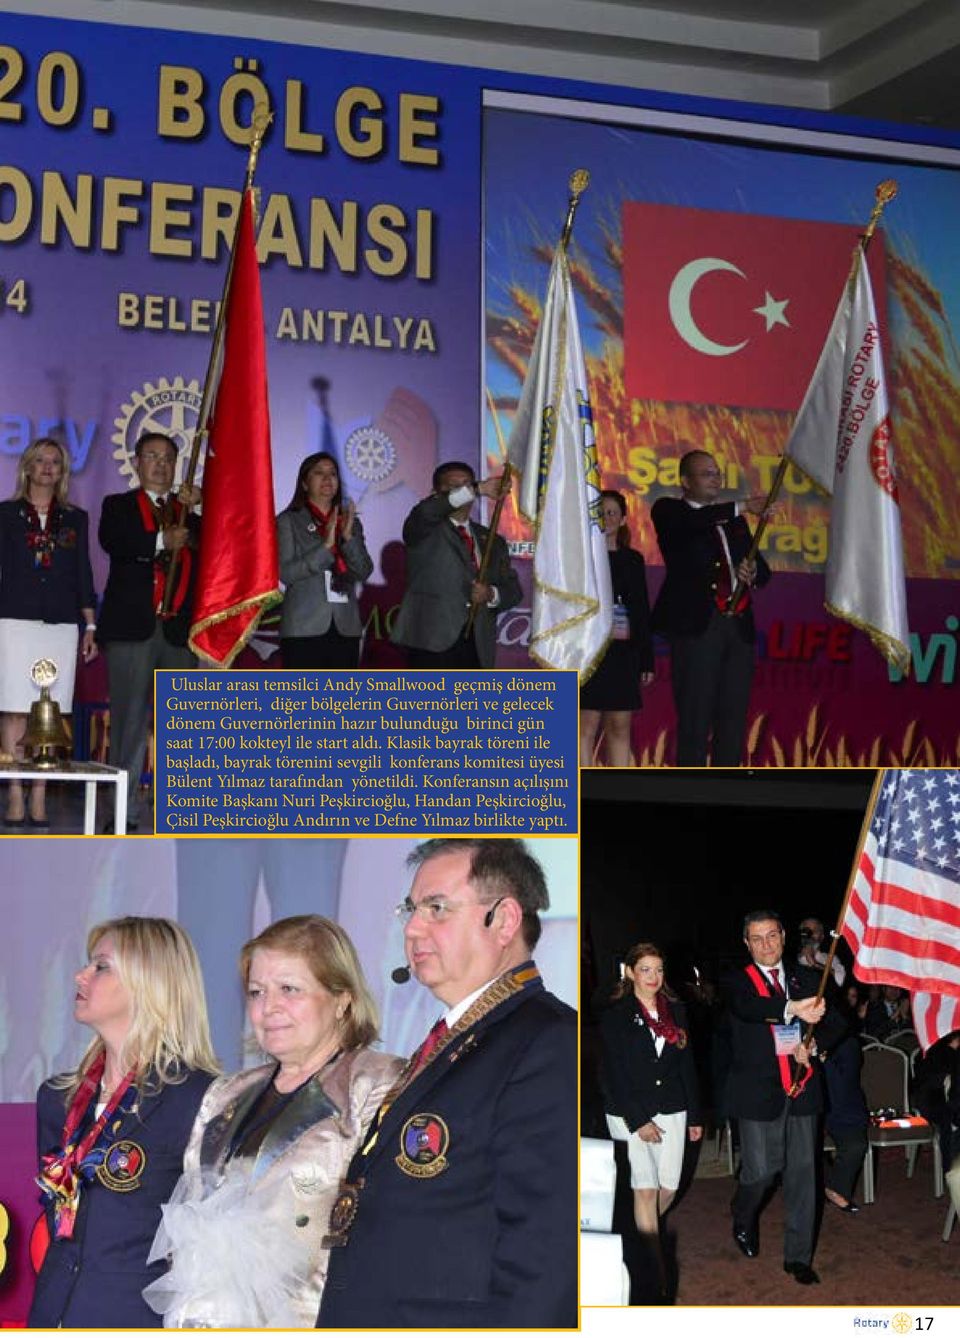 Klasik bayrak töreni ile başladı, bayrak törenini sevgili konferans komitesi üyesi Bülent Yılmaz tarafından